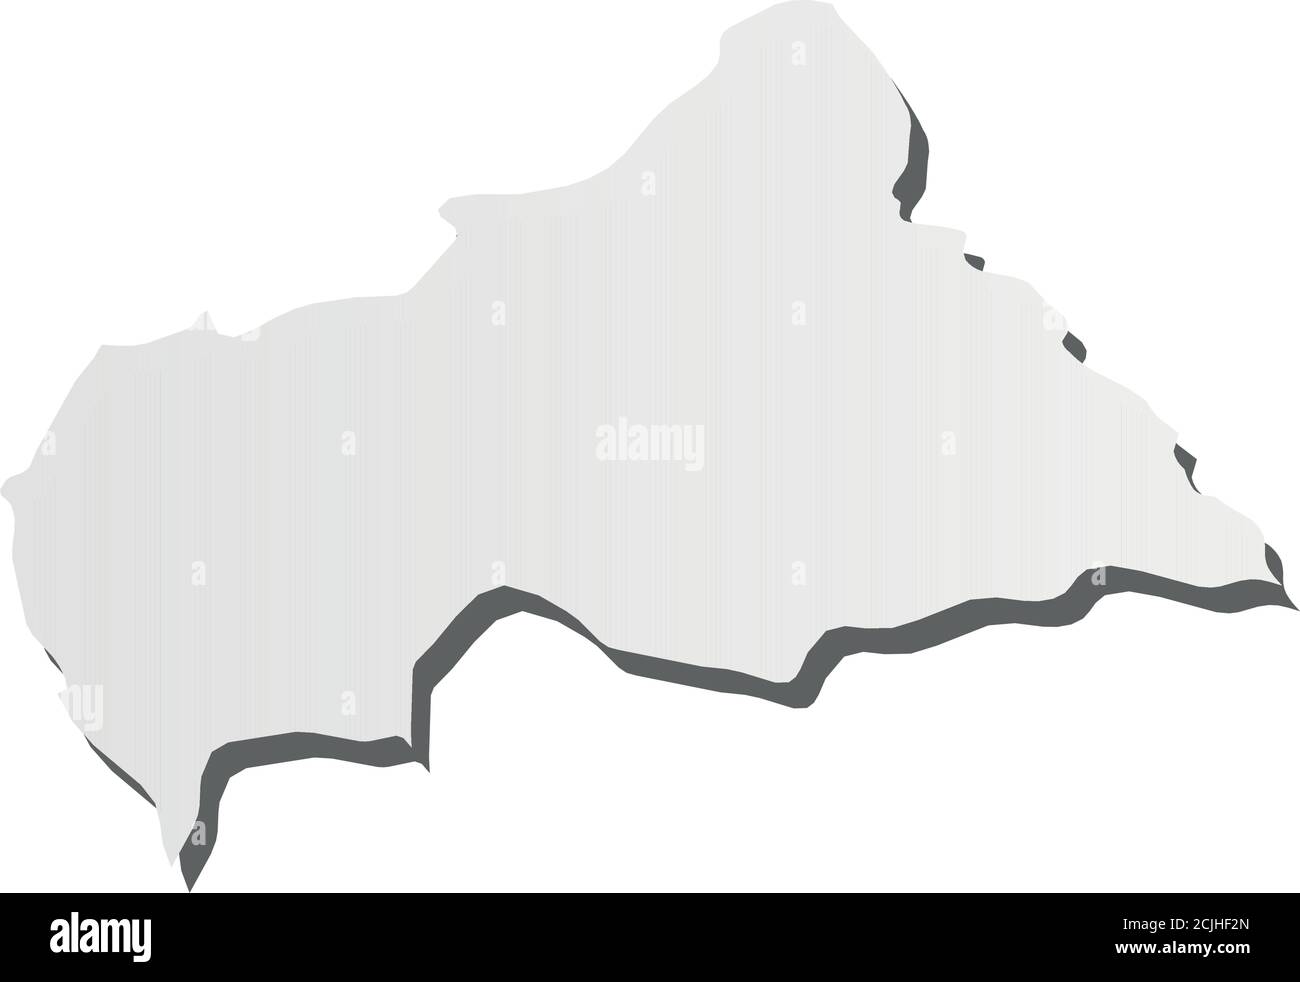 República Centroafricana Mapa De Silueta Gris En 3d De La Zona Del